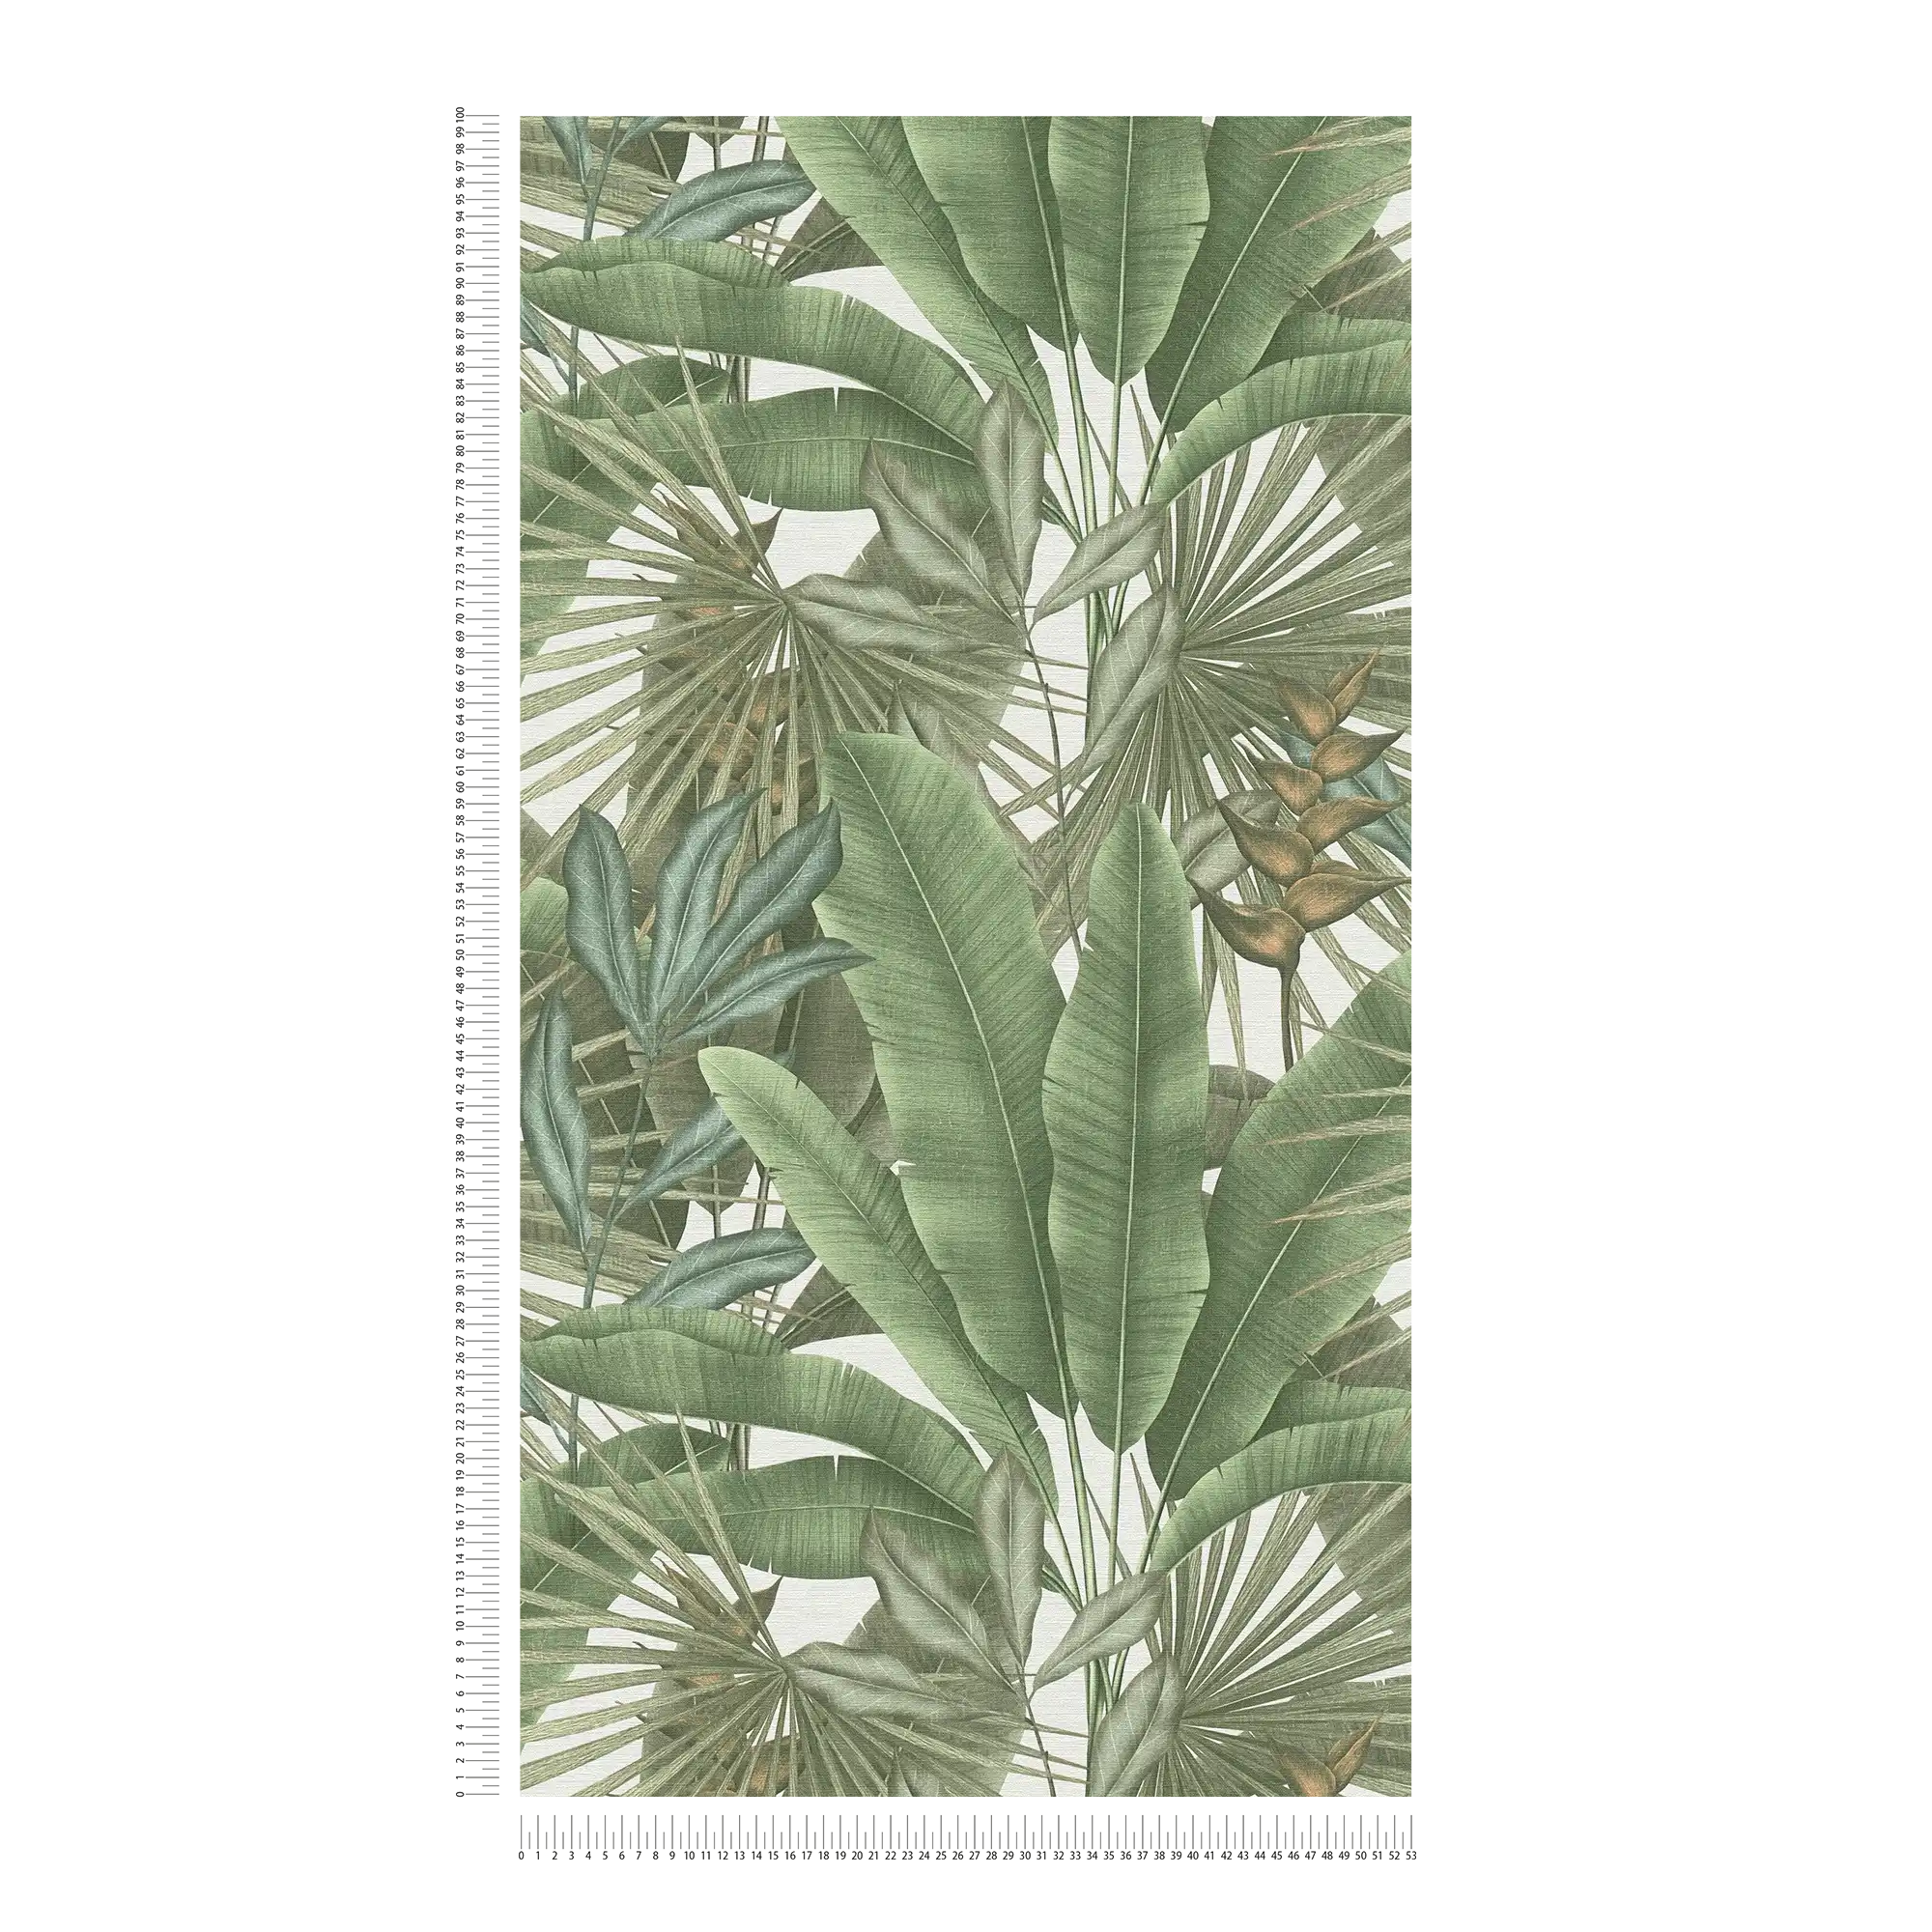             Florale Dschungeltapete leicht strukturiert mit großen Blättern – Grün, Weiß, Beige
        